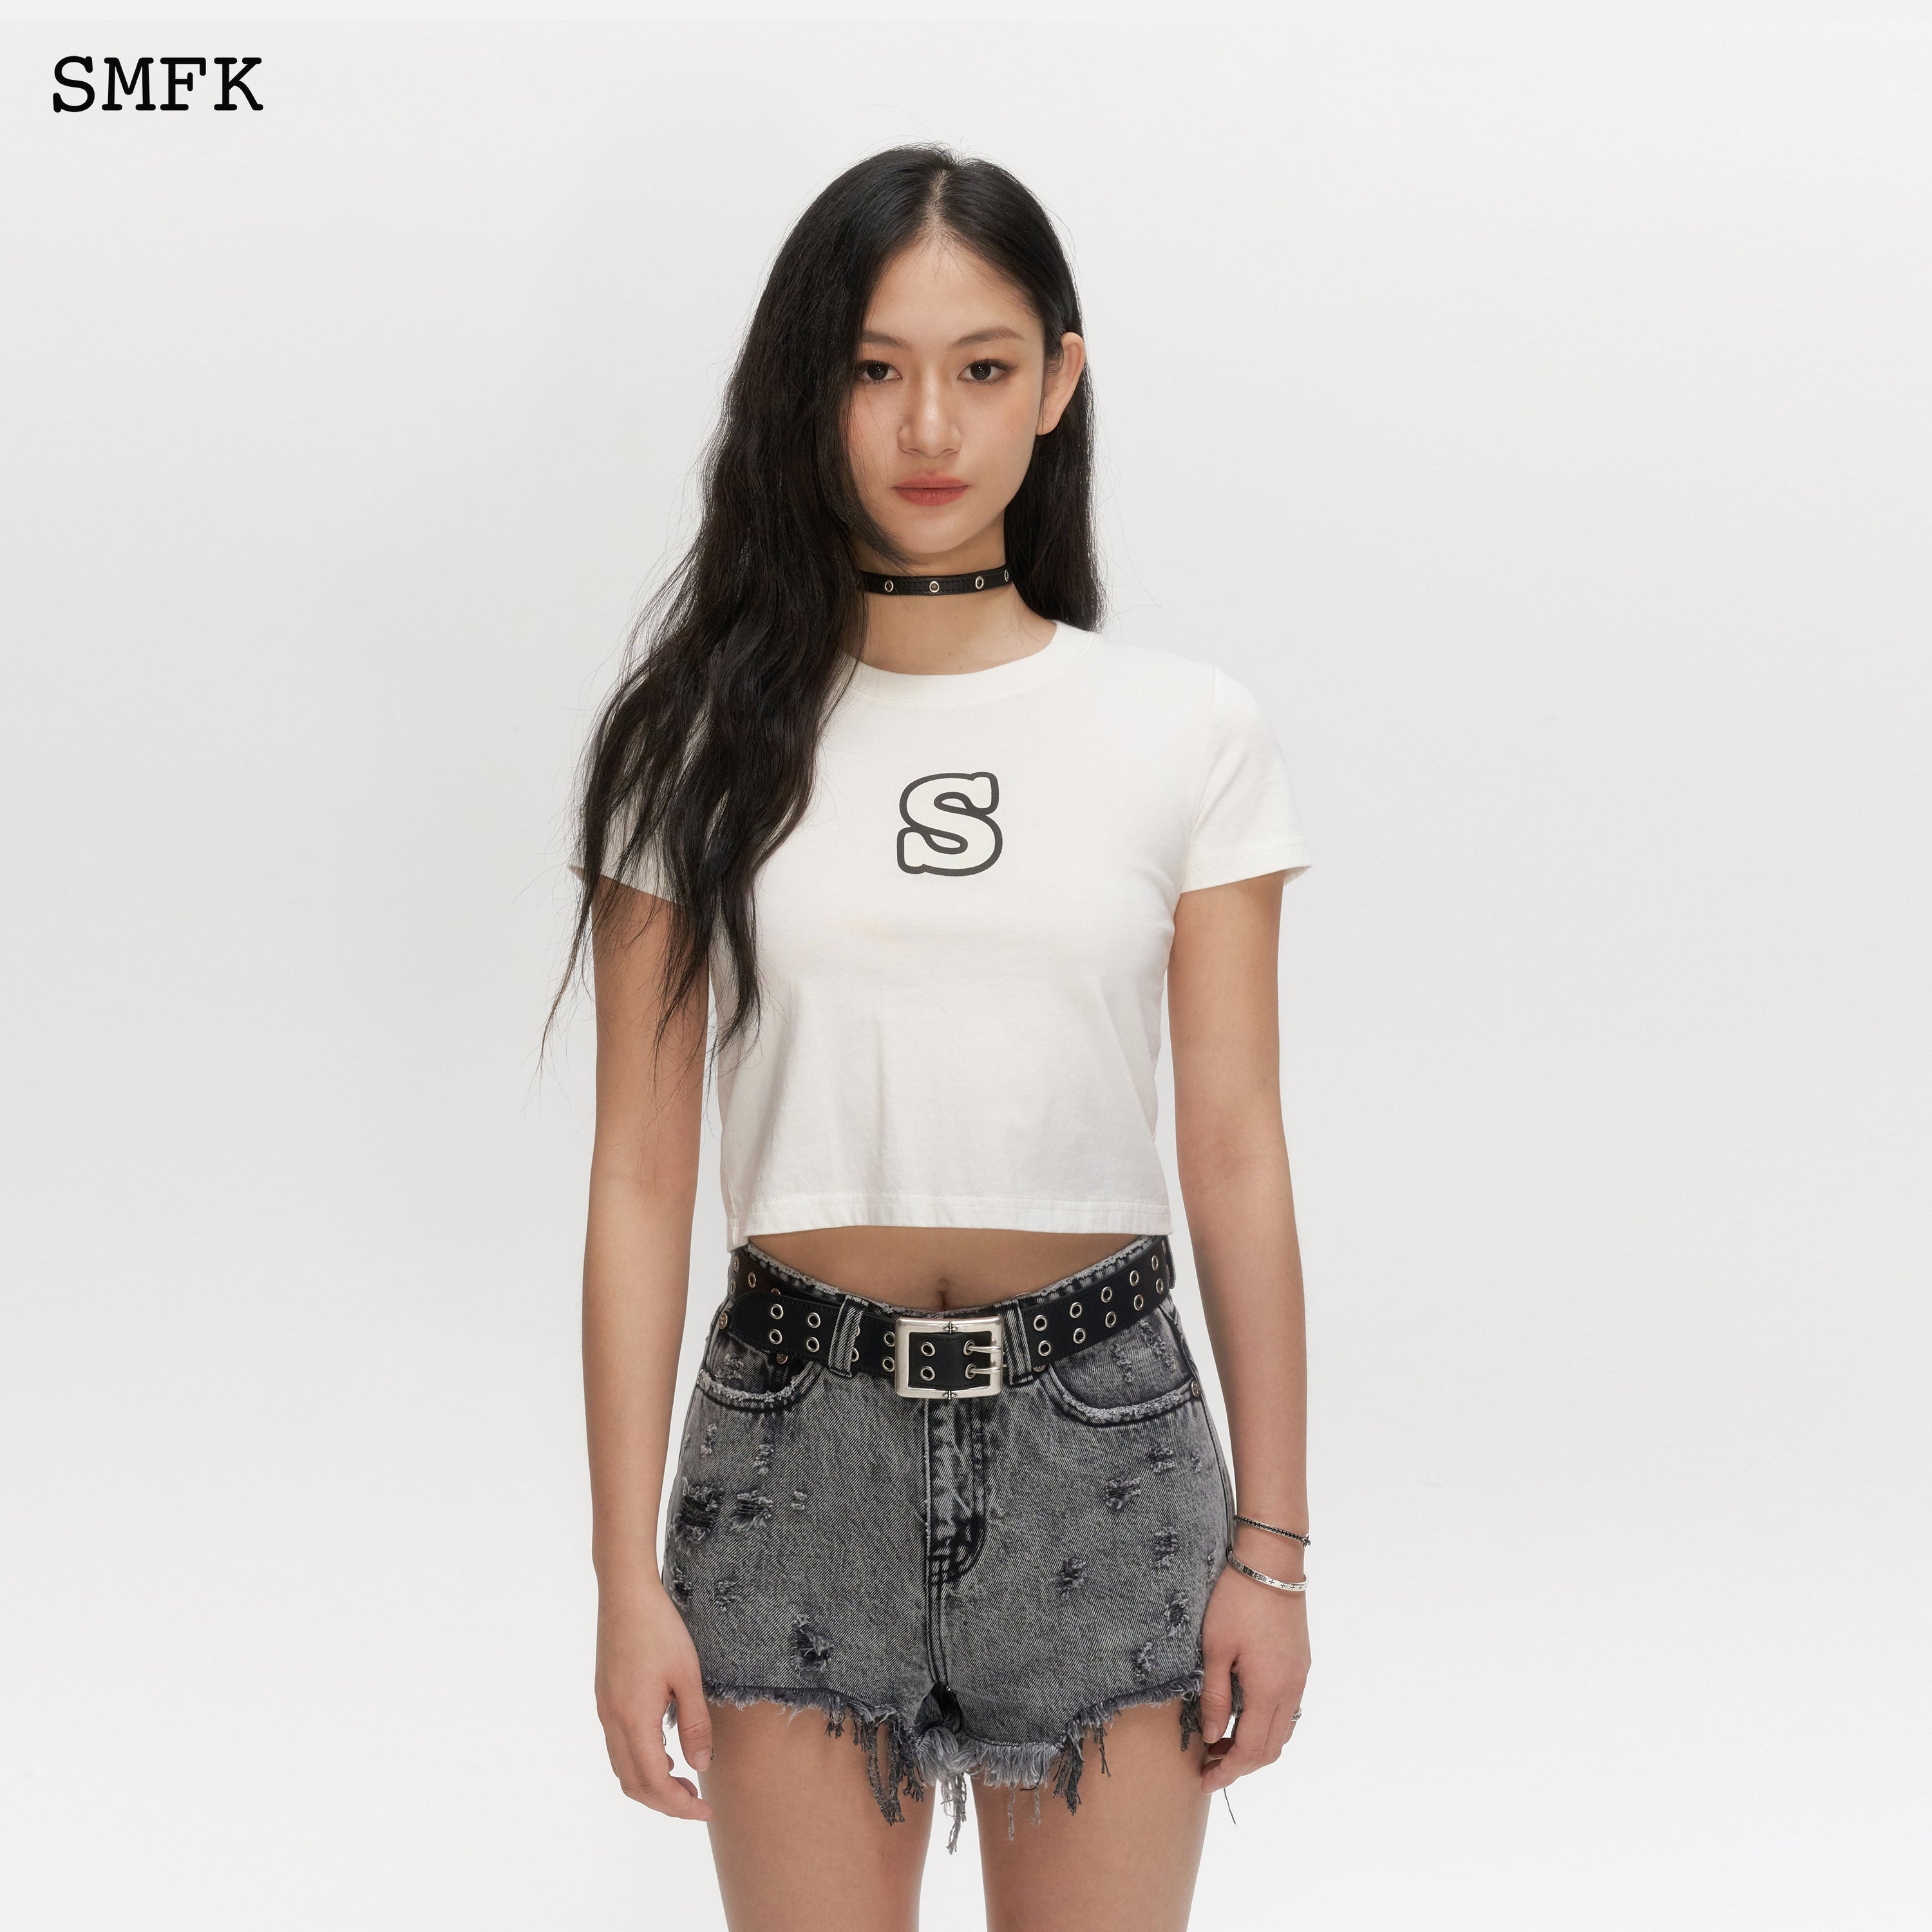 Skinny Model White Tight T-shirt - SMFK Official